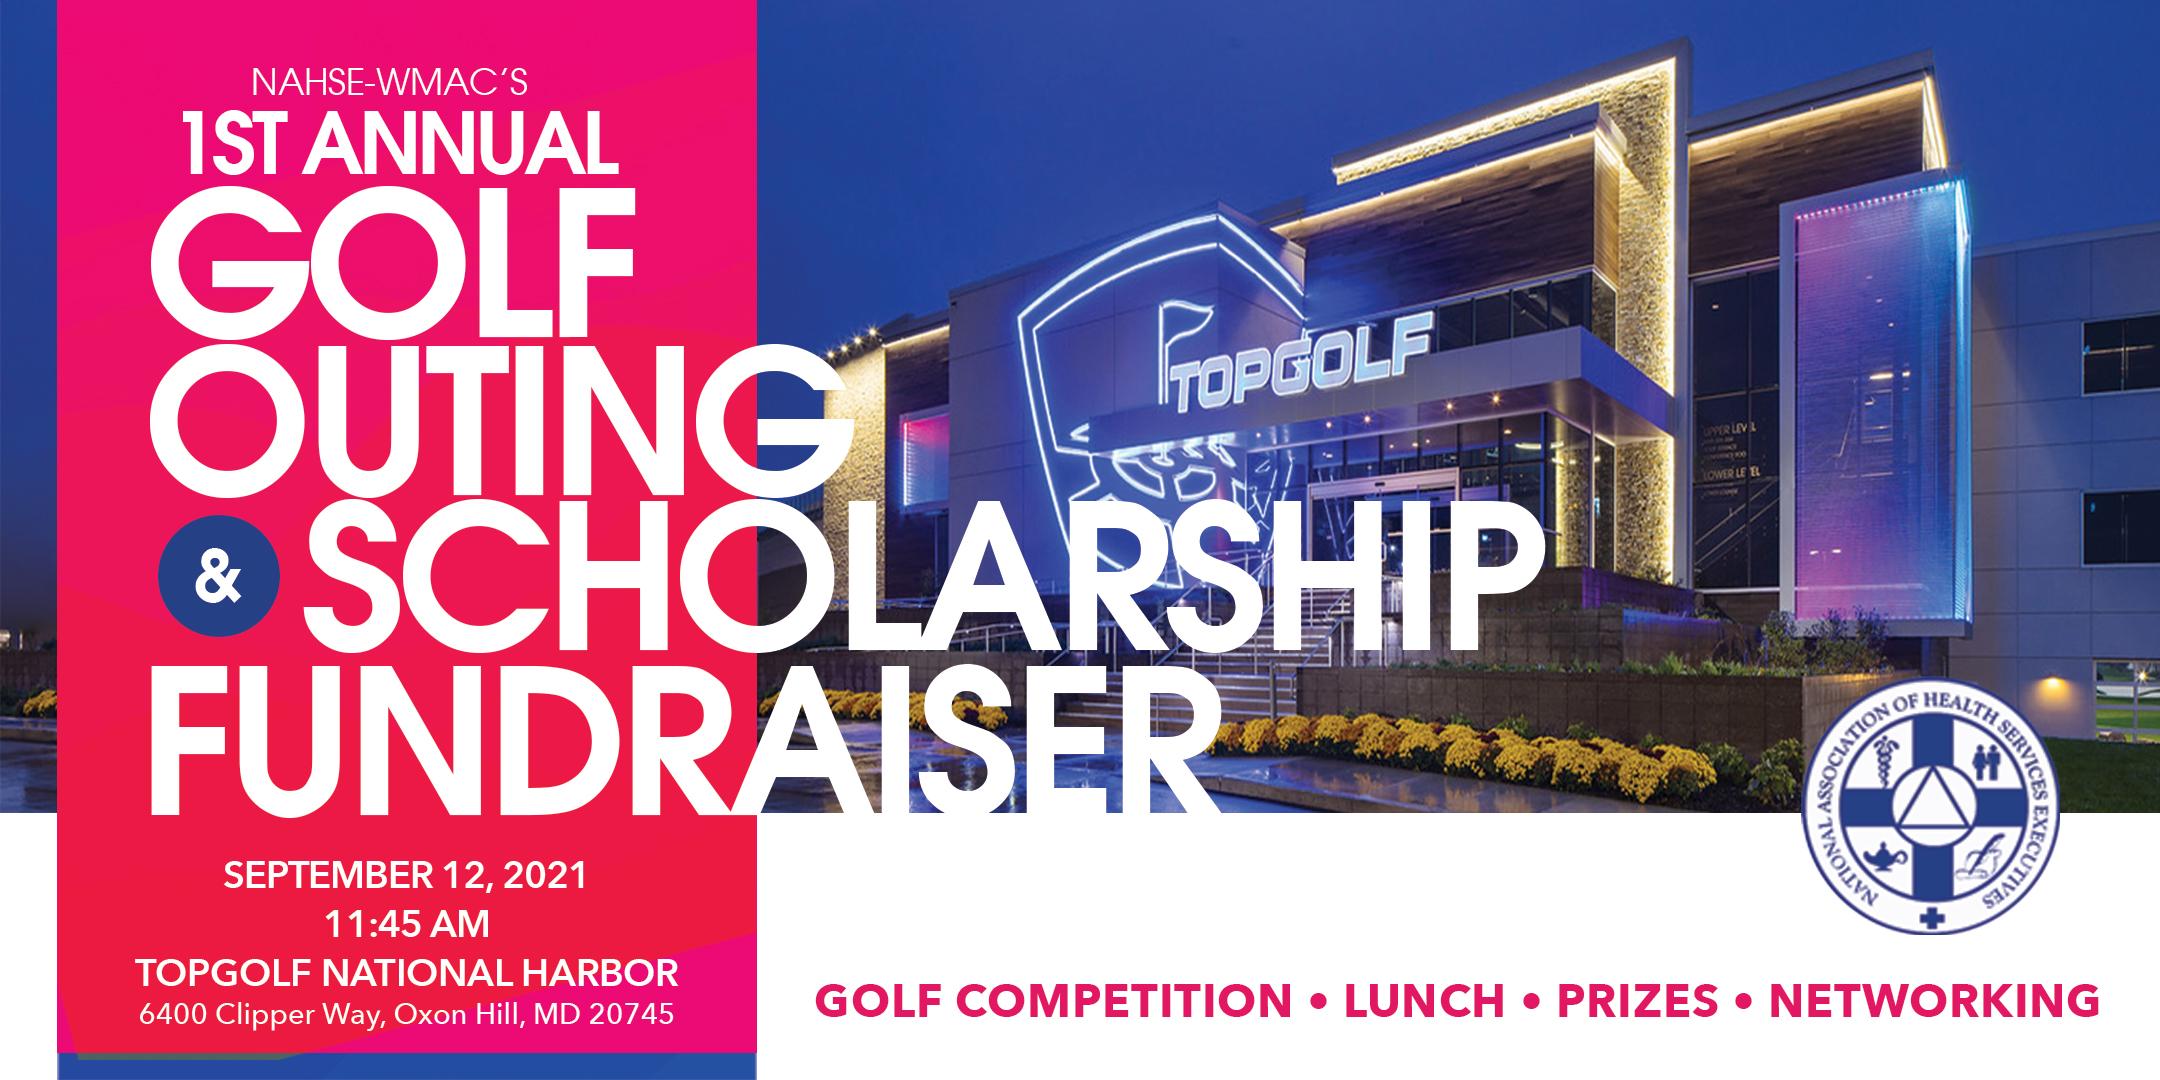 NAHSE-WMAC 1st Annual Golf Scholarship Fundrasier